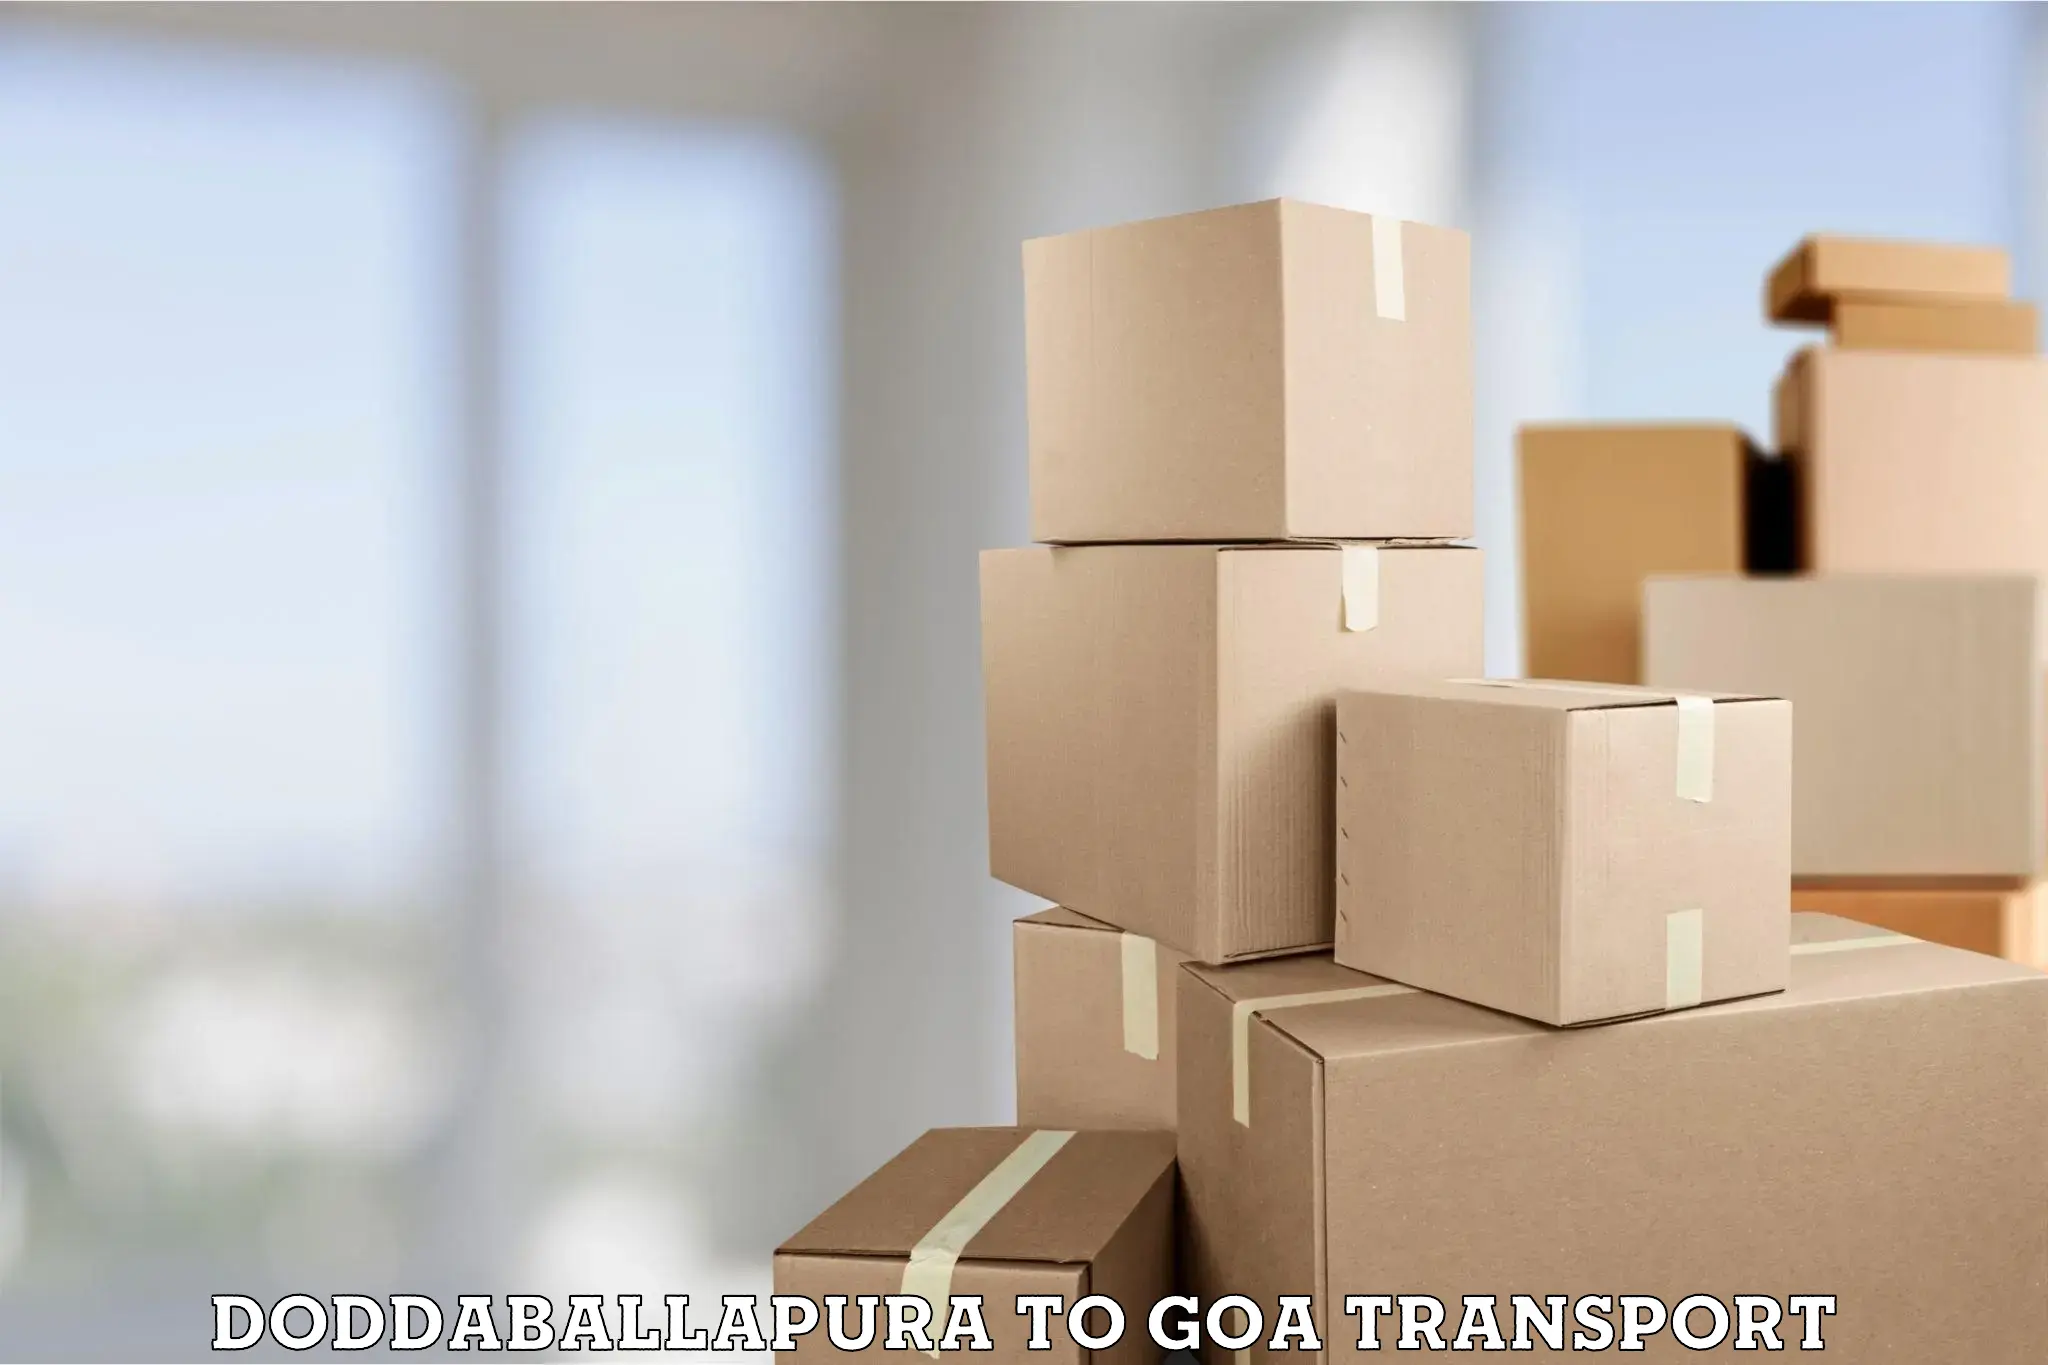 Furniture transport service Doddaballapura to Mormugao Port